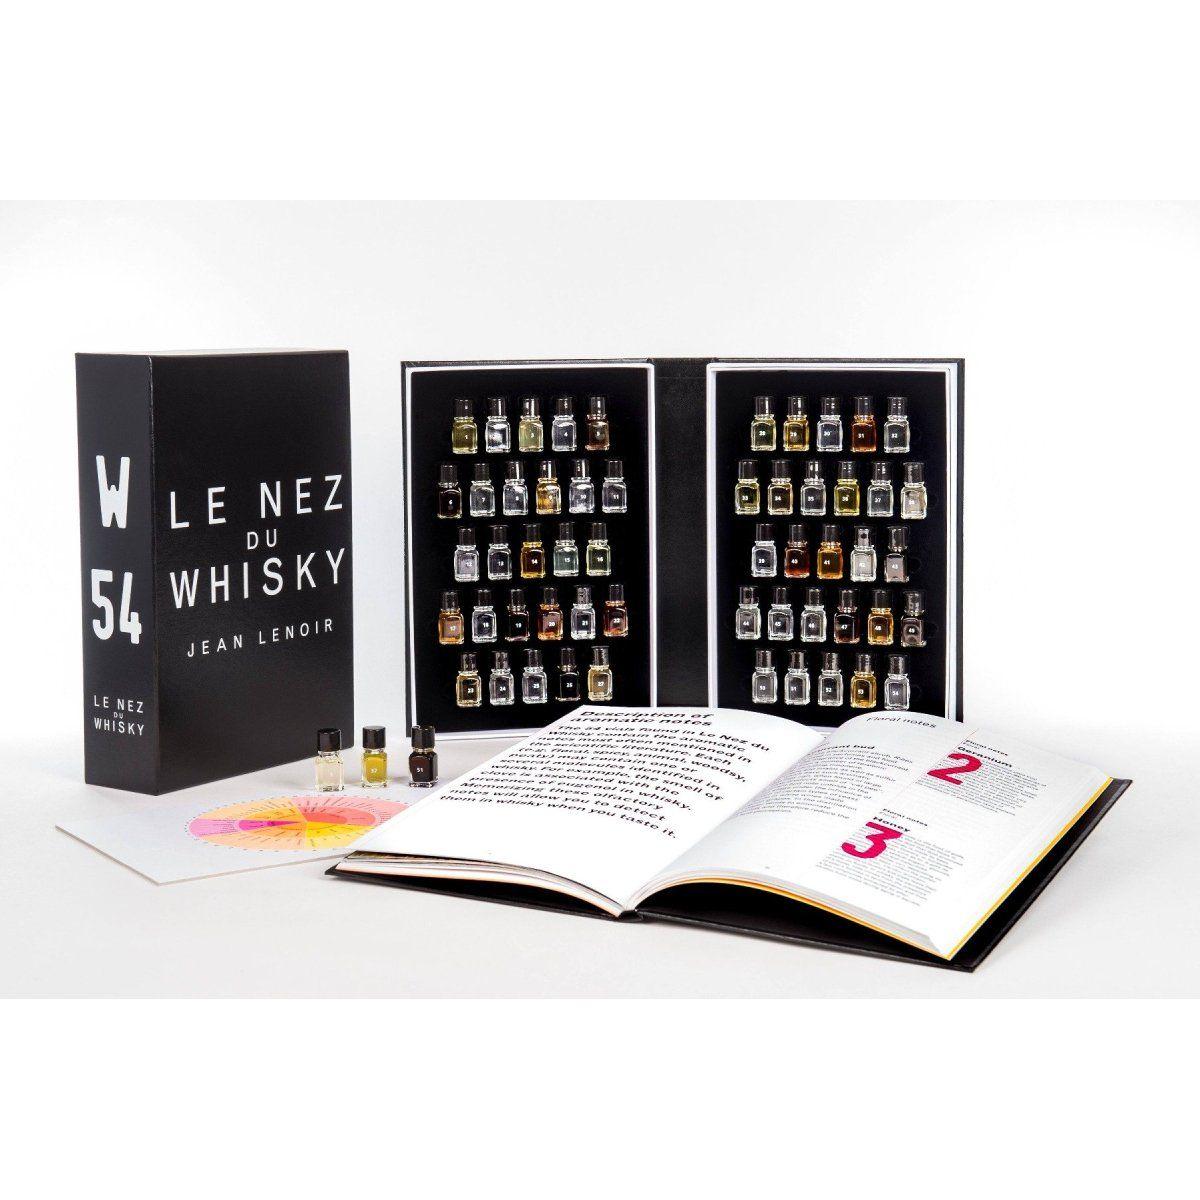 Le Nez du Whisky 54- Special Bundle Promotion